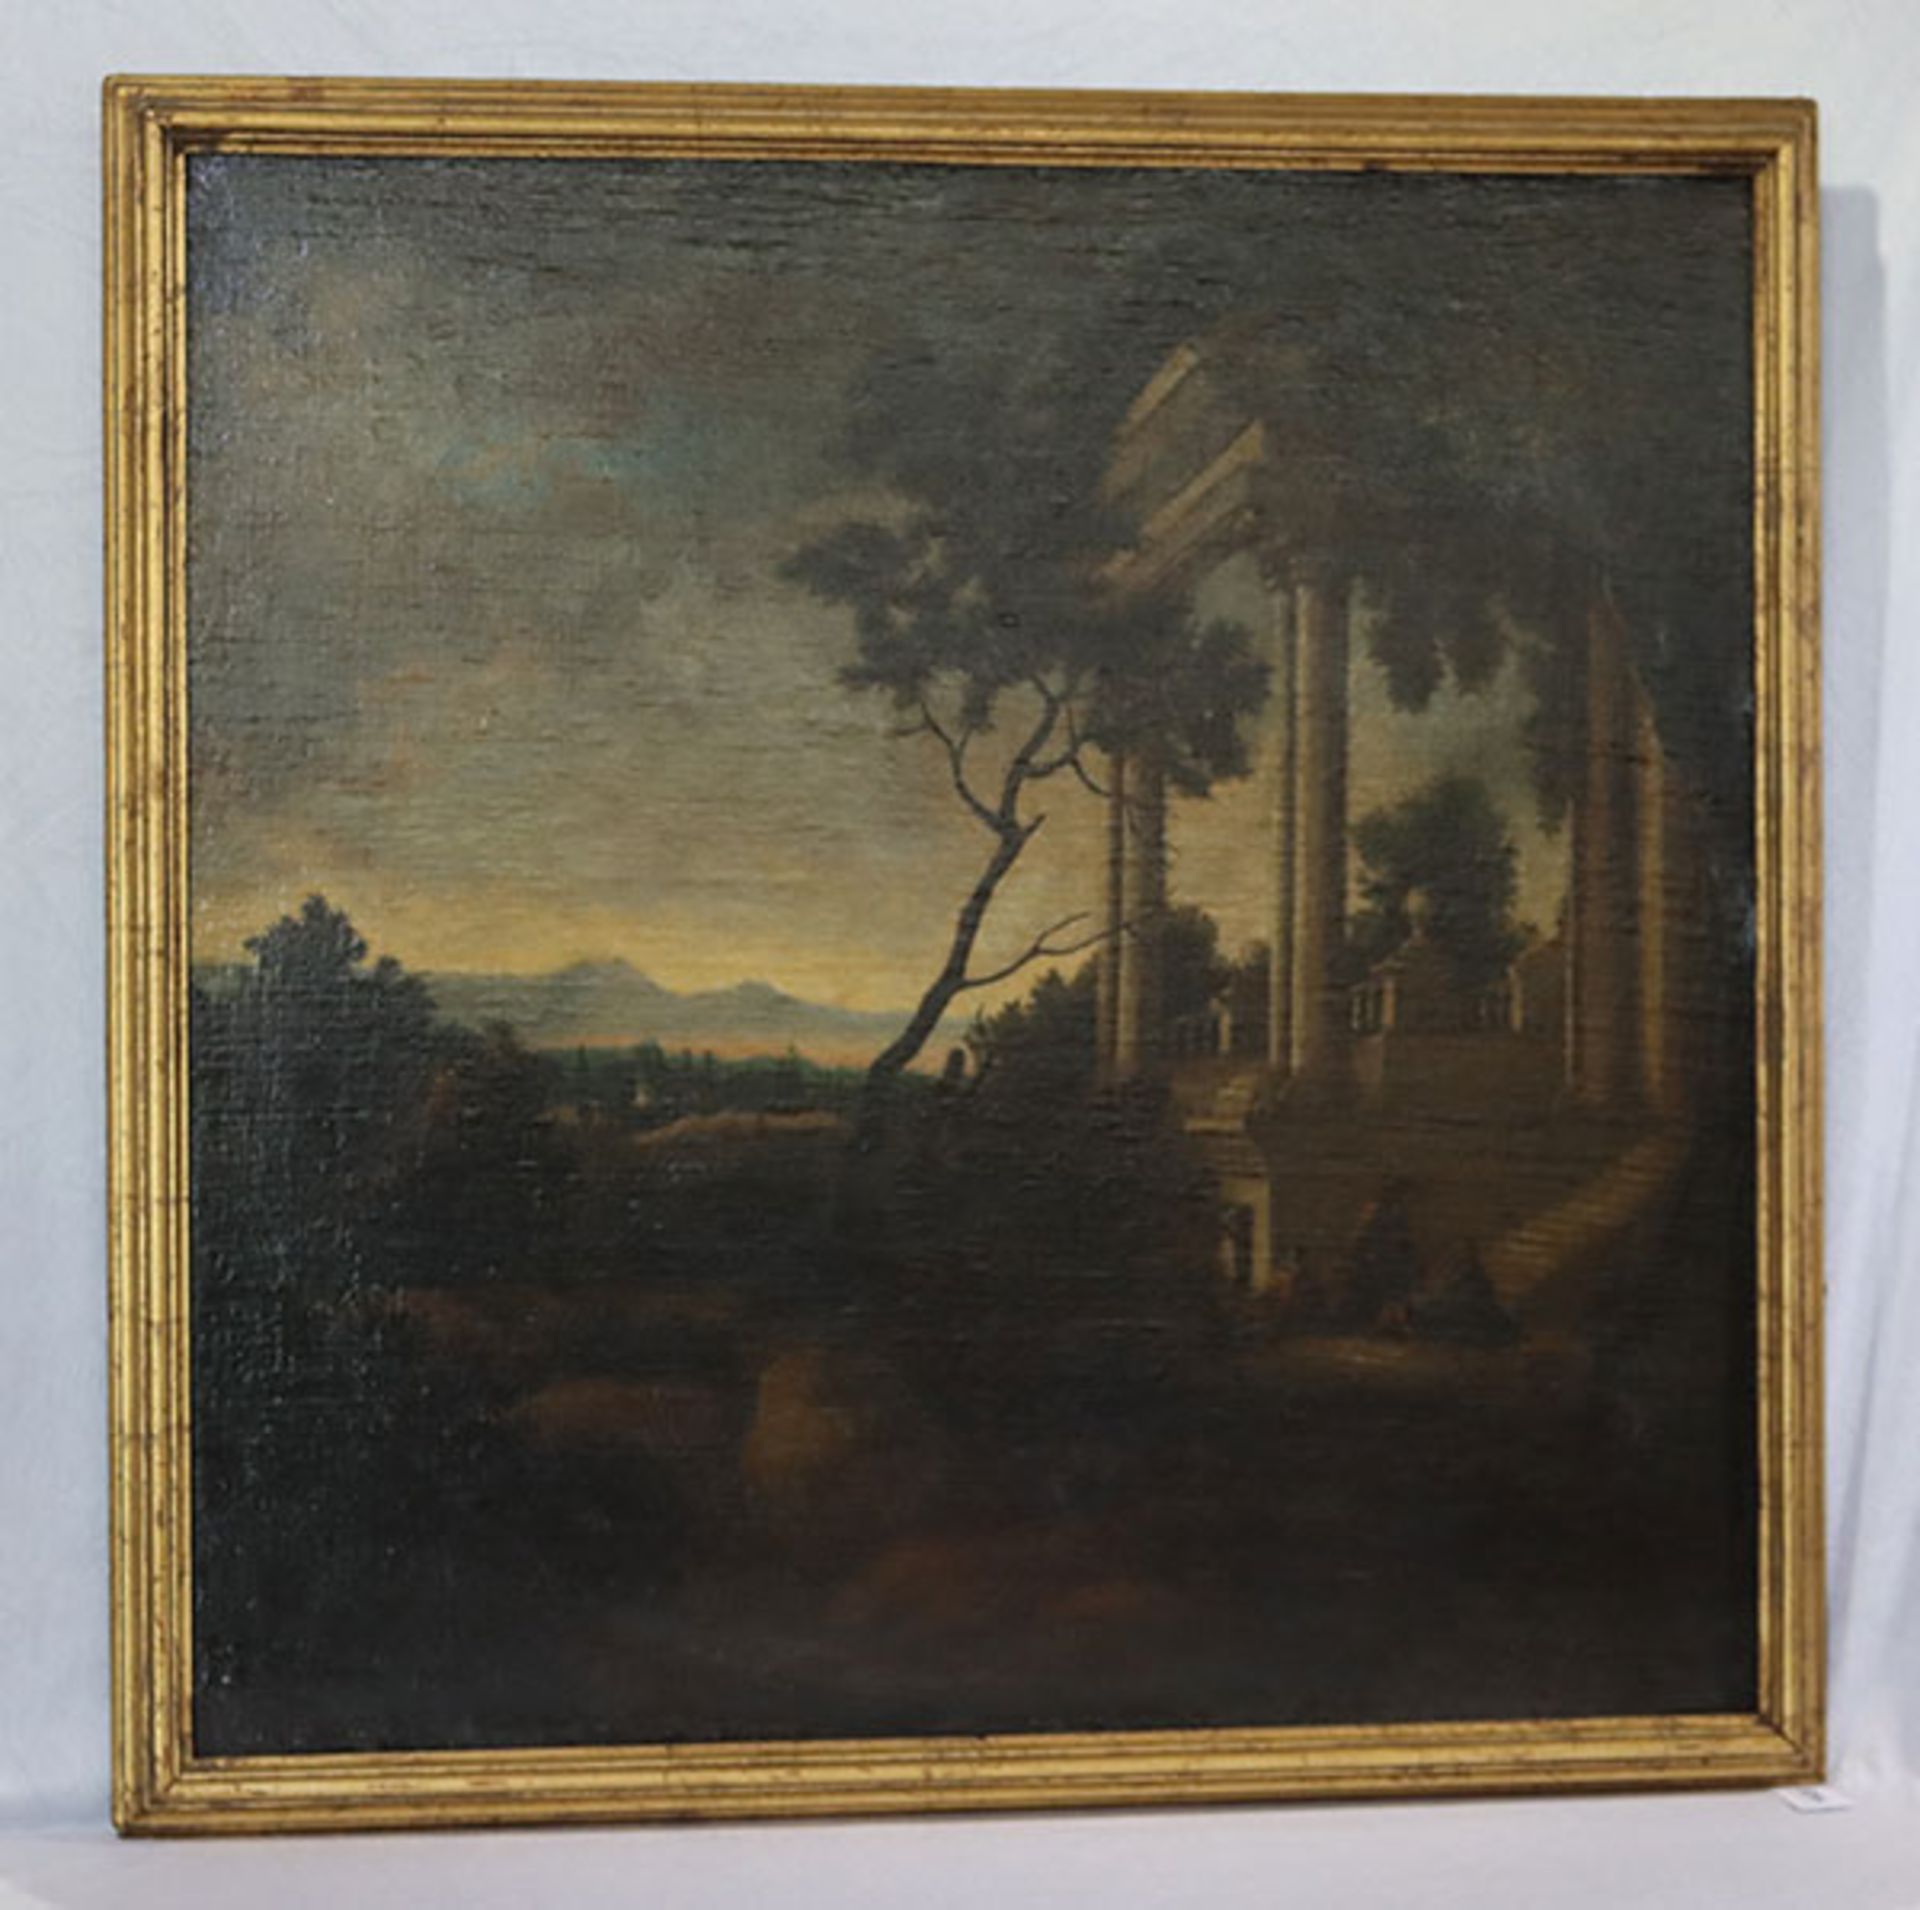 Gemälde ÖL/LW 'Südländische Landschafts-Szenerie mit Säulenruine', 19. Jahrhundert, gerahmt,